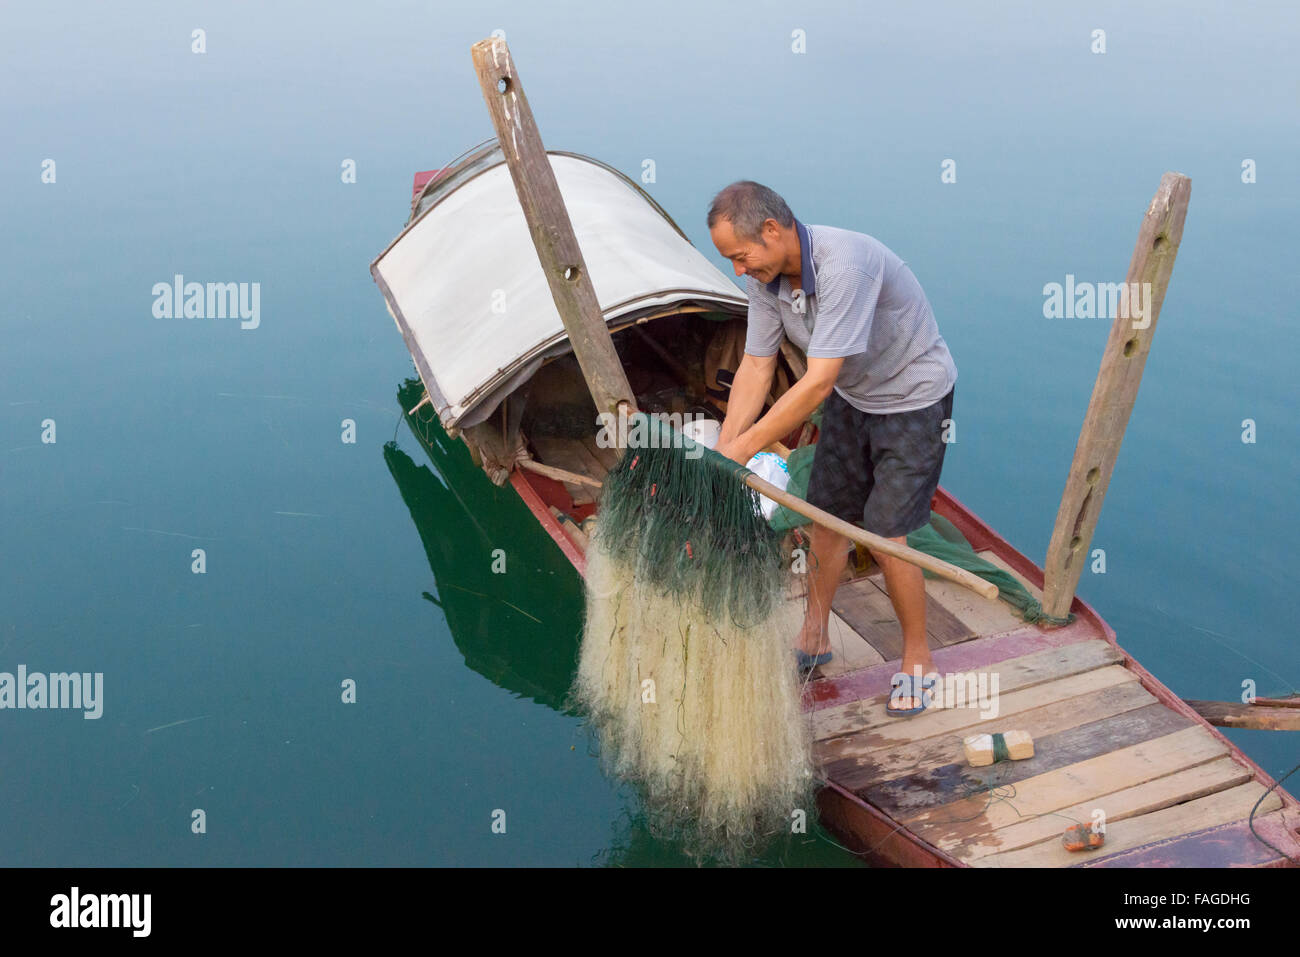 Man on fishing boat, Yongzhou, Hunan Province, China Stock Photo